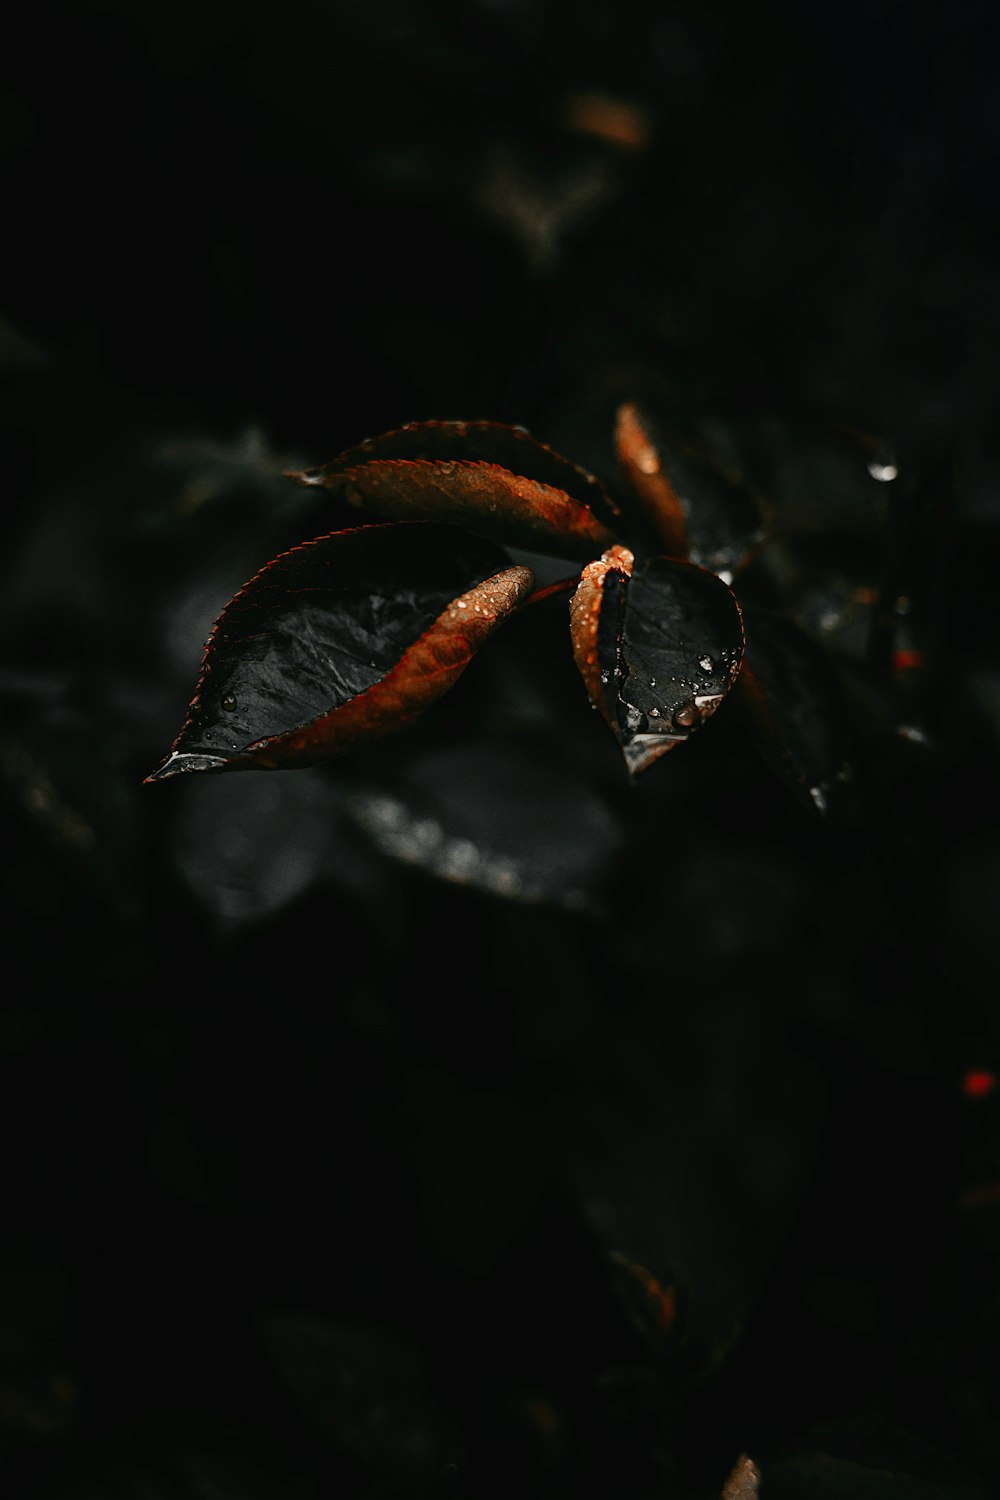 brown dried leaf on water